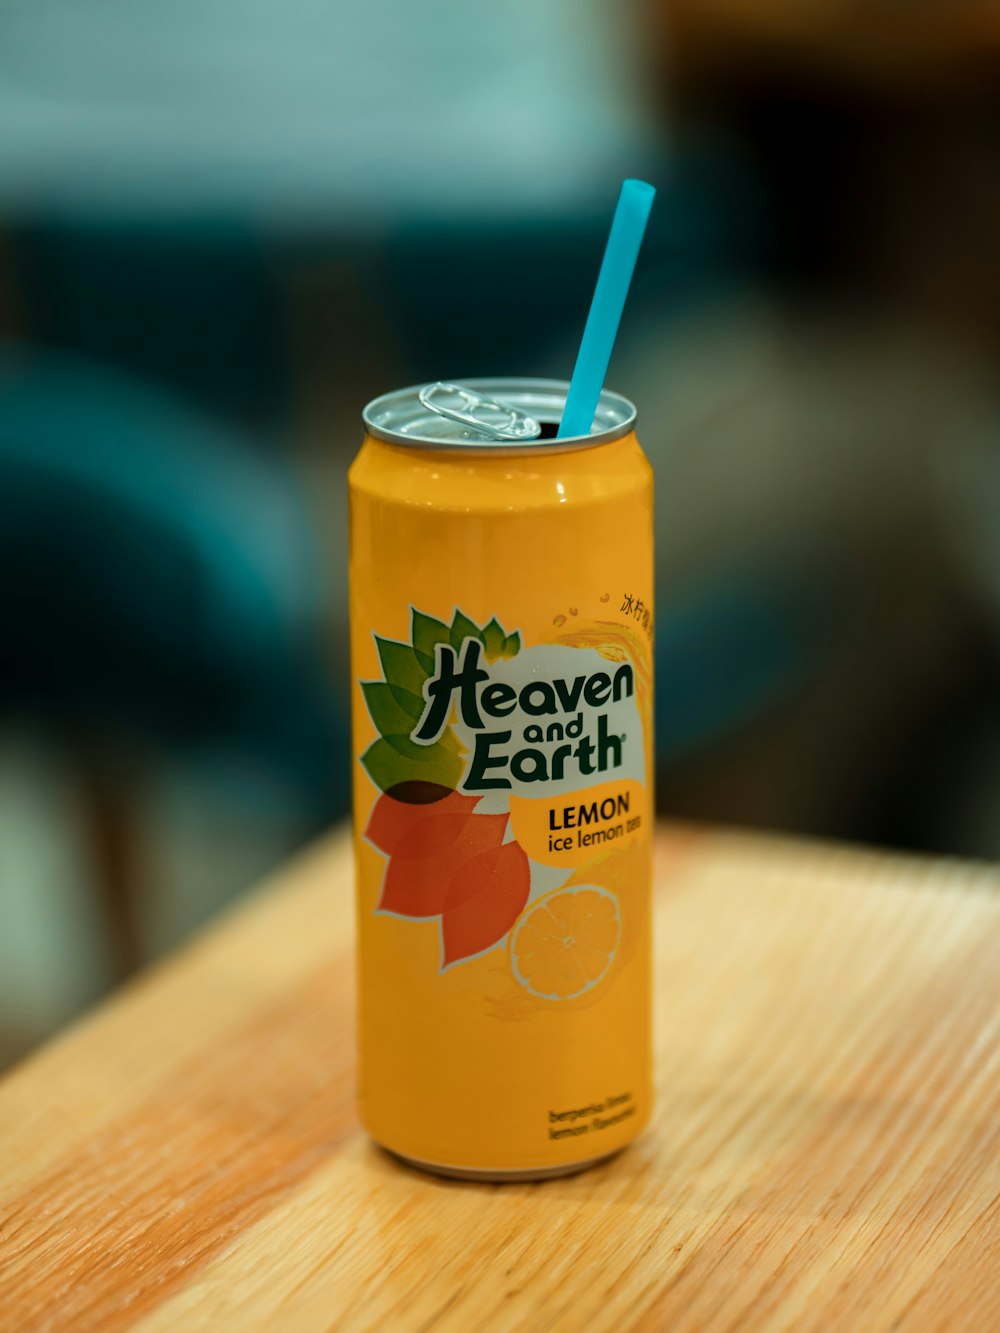 Heaven and Earth lemon juice can